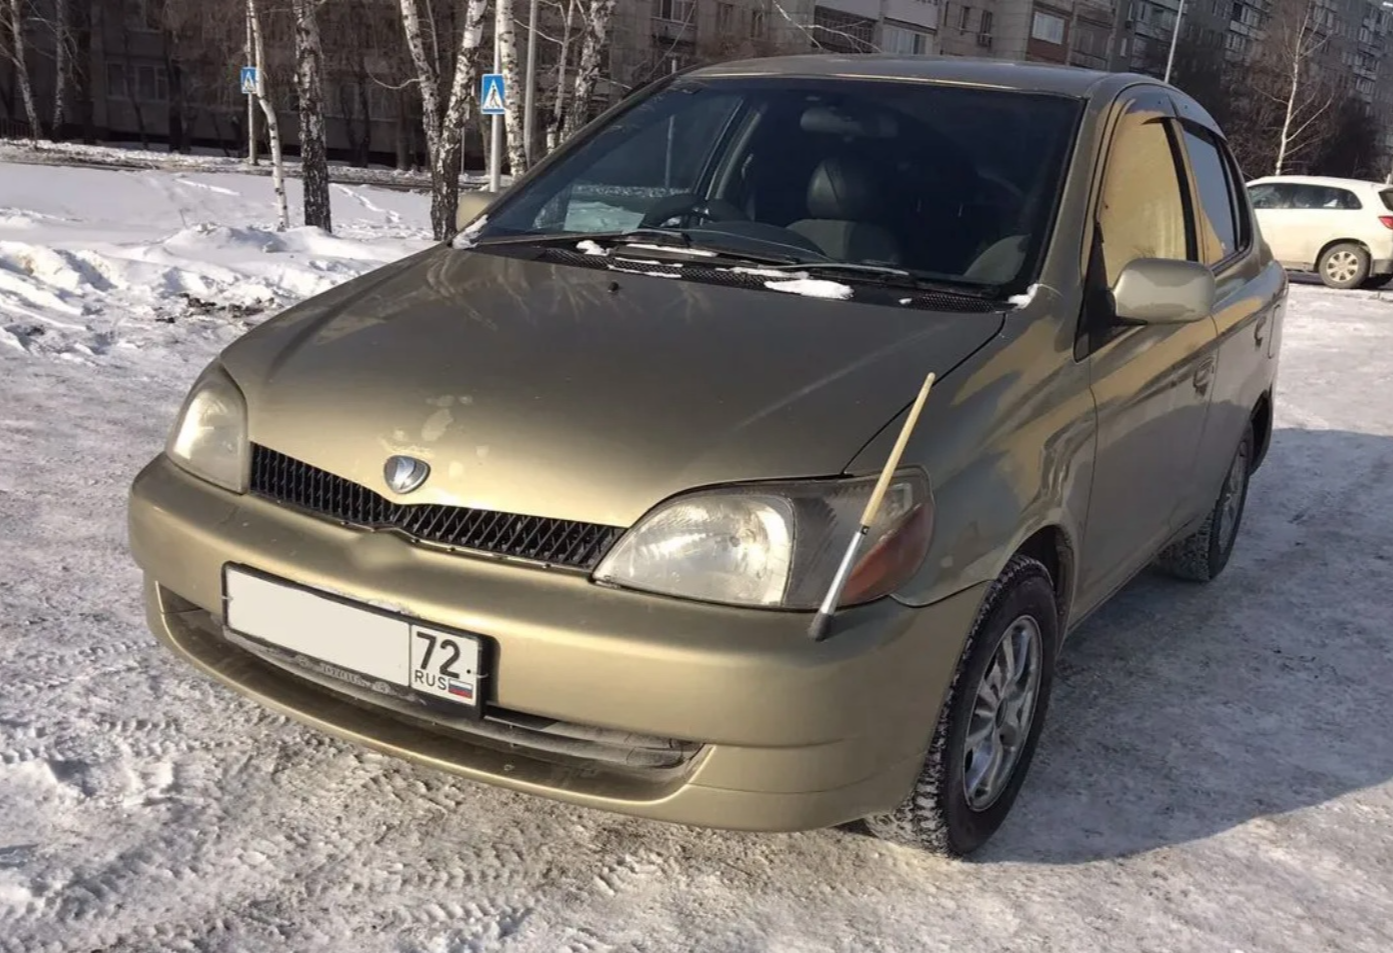 Аренда toyota platz эконом класса 2003 года в городе Москва от 100 руб./сутки, передний привод, двигатель: бензин, объем 1.1 литр, ОСАГО (Мультидрайв), без водителя, недорого - RentRide